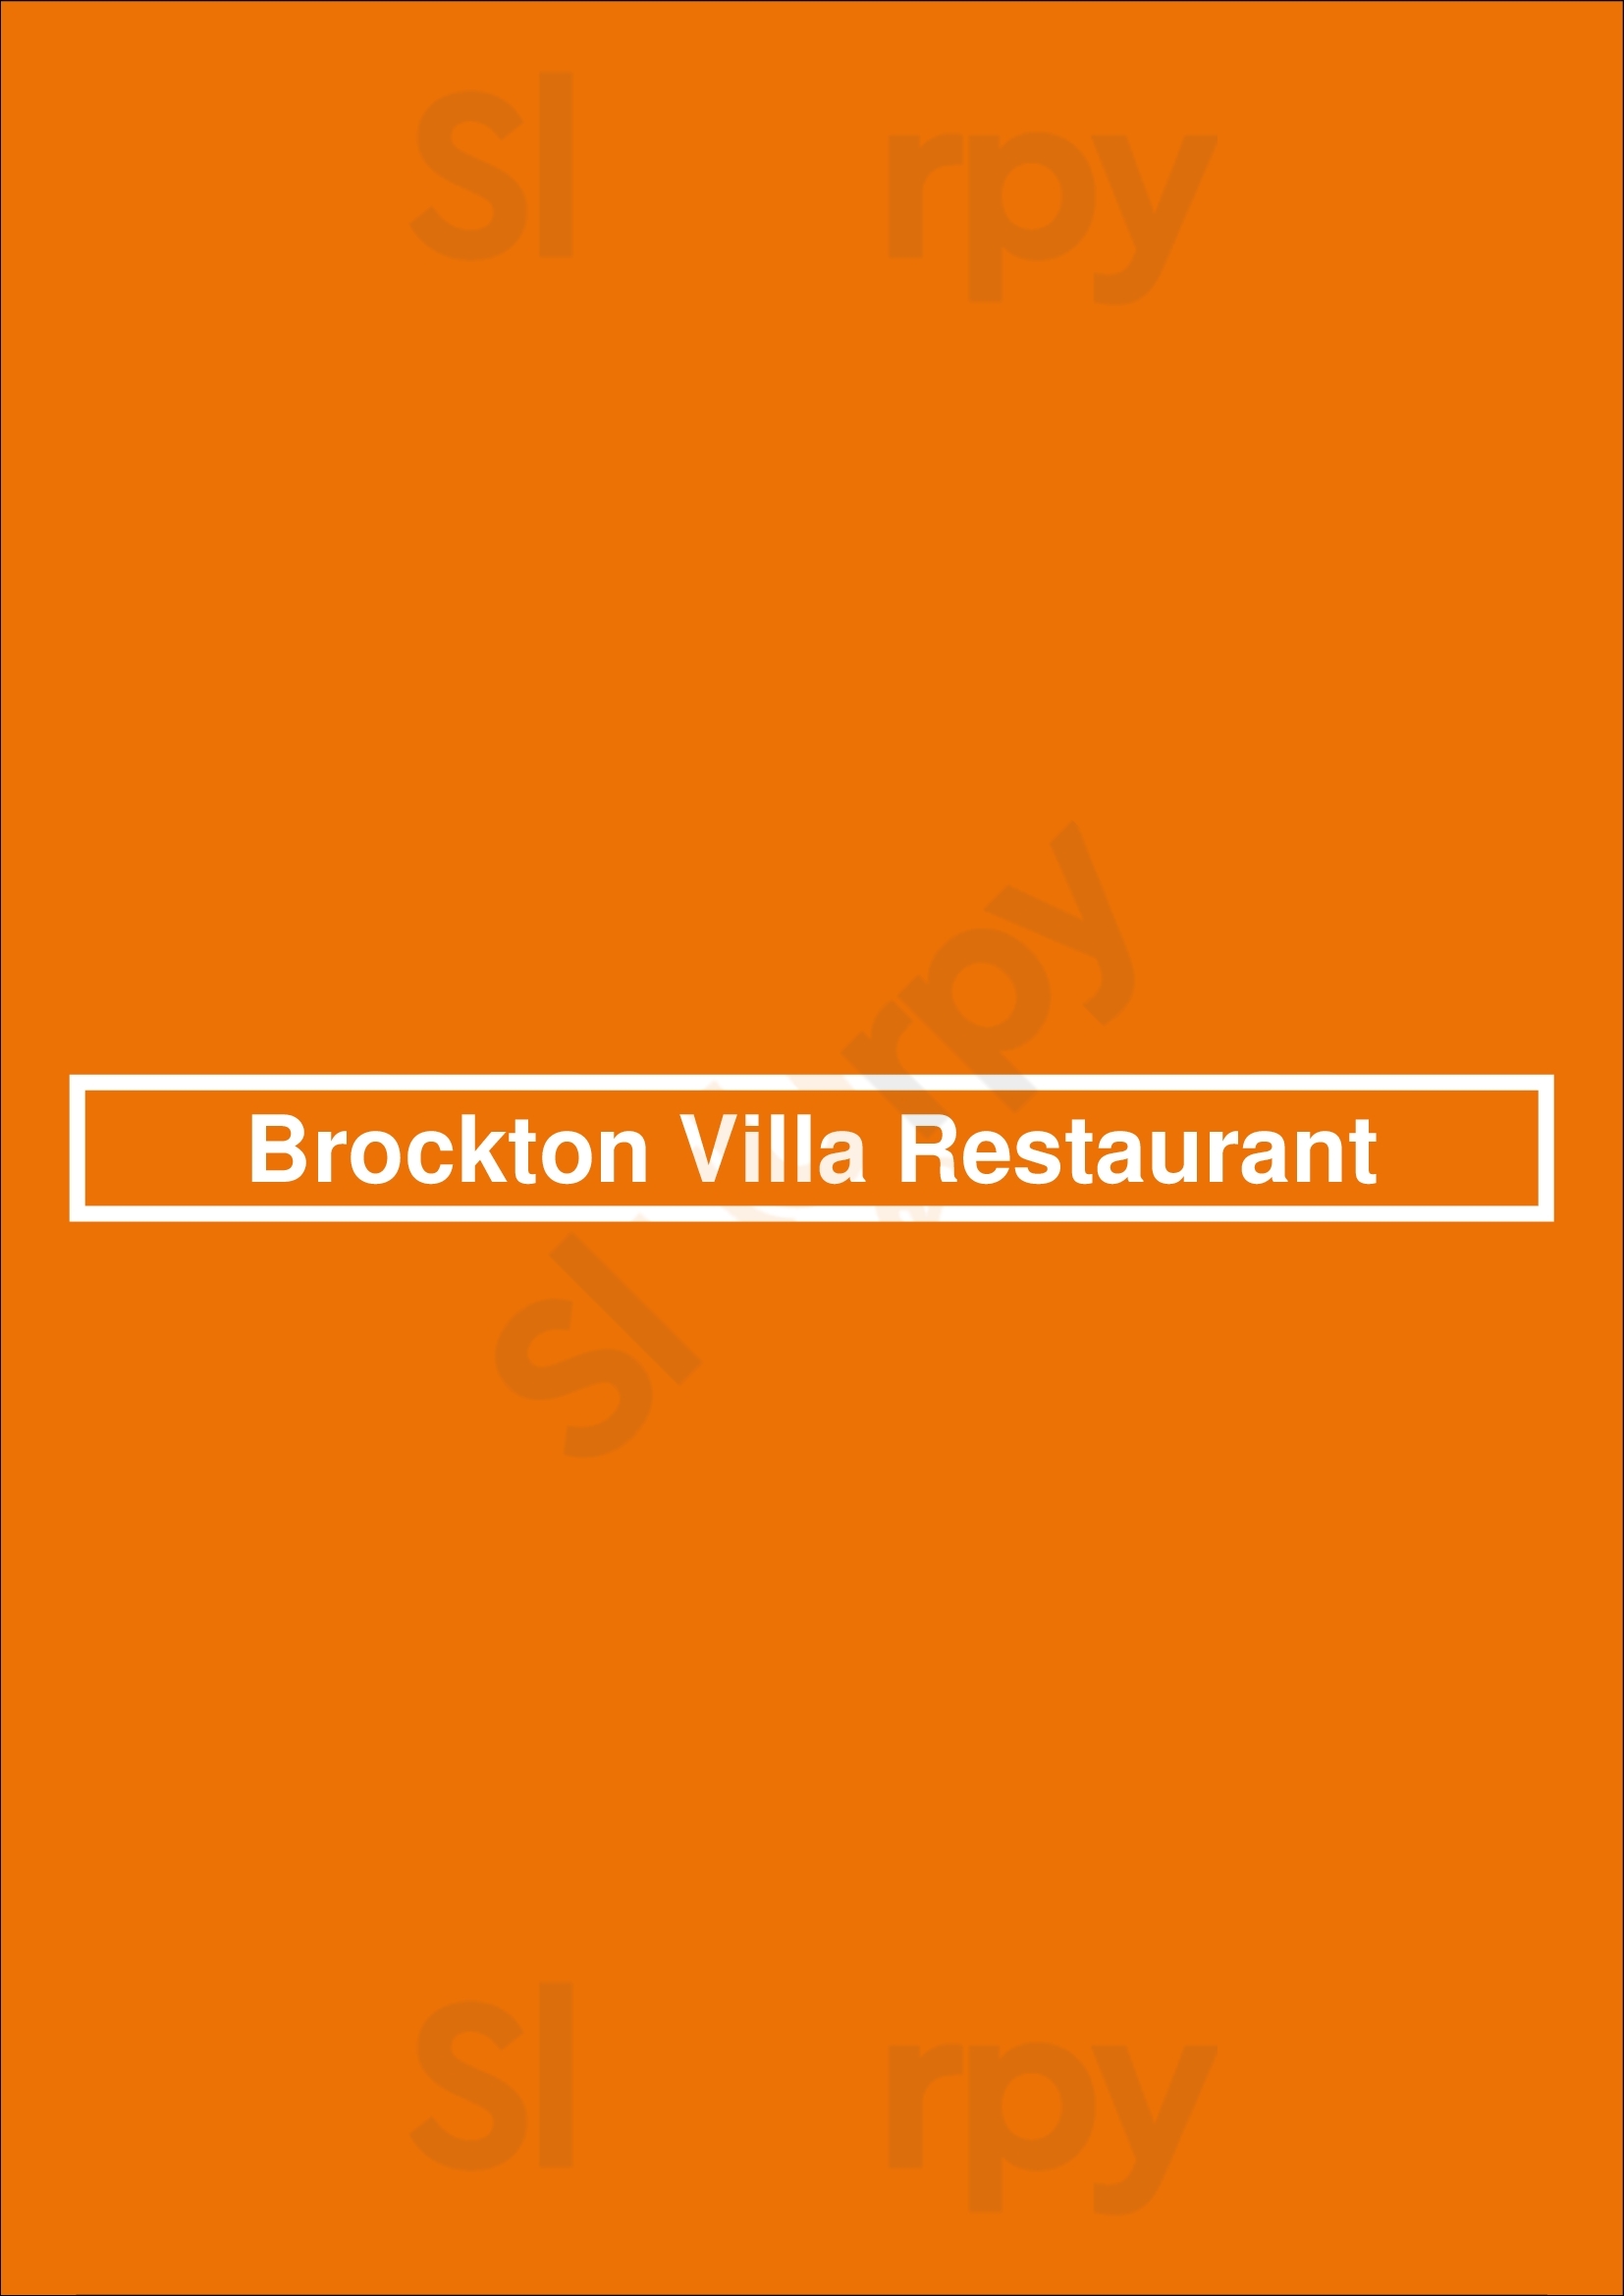 Brockton Villa Restaurant La Jolla Menu - 1